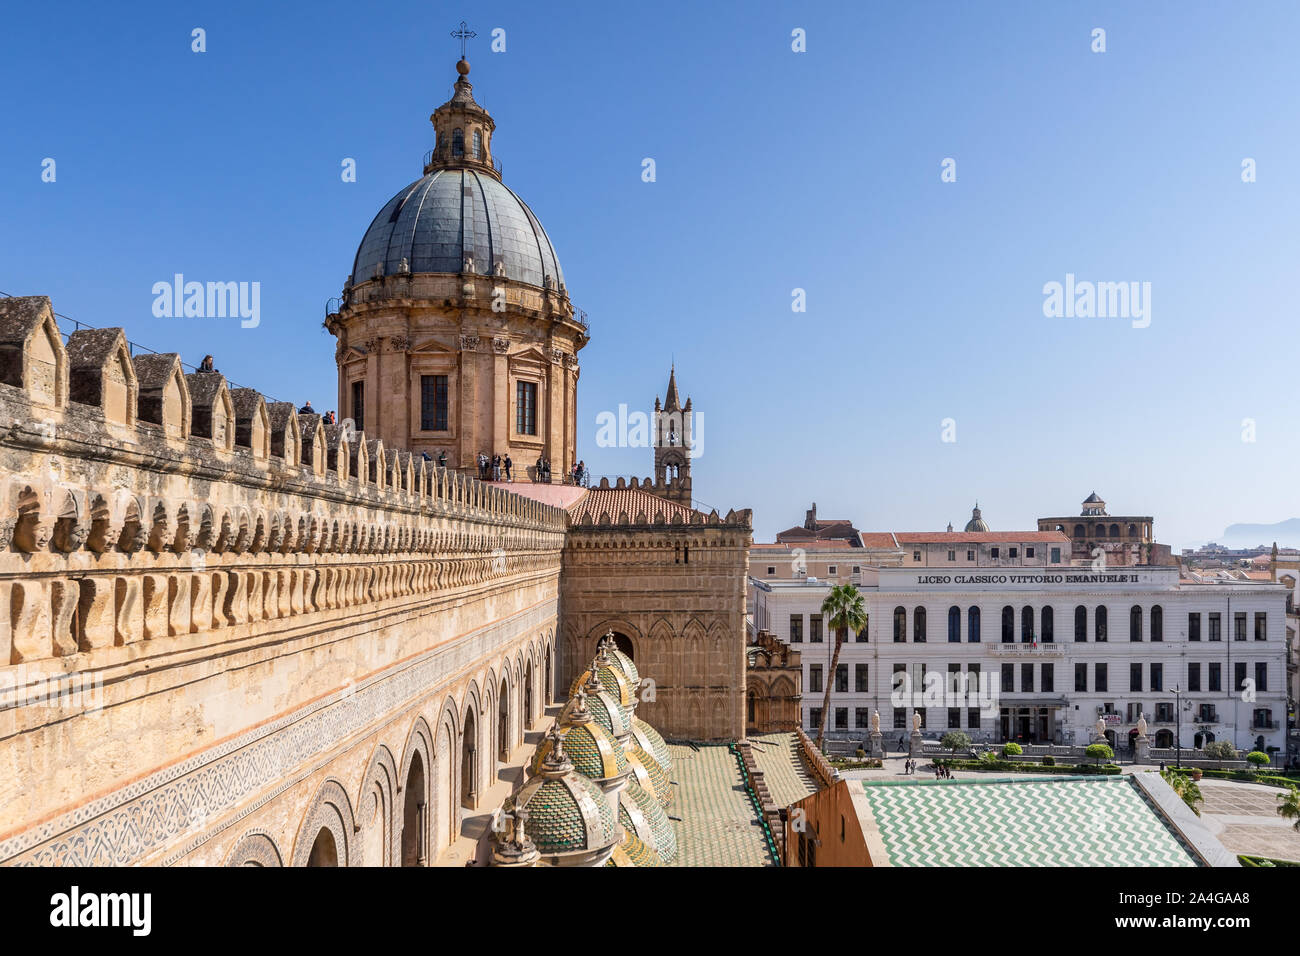 Palermo, Sizilien - März 23, 2019: Blick auf die Kathedrale von Palermo oder Kathedrale Palermo dome Struktur in einer schönen sonnigen Nachmittag in Palermo. Stockfoto